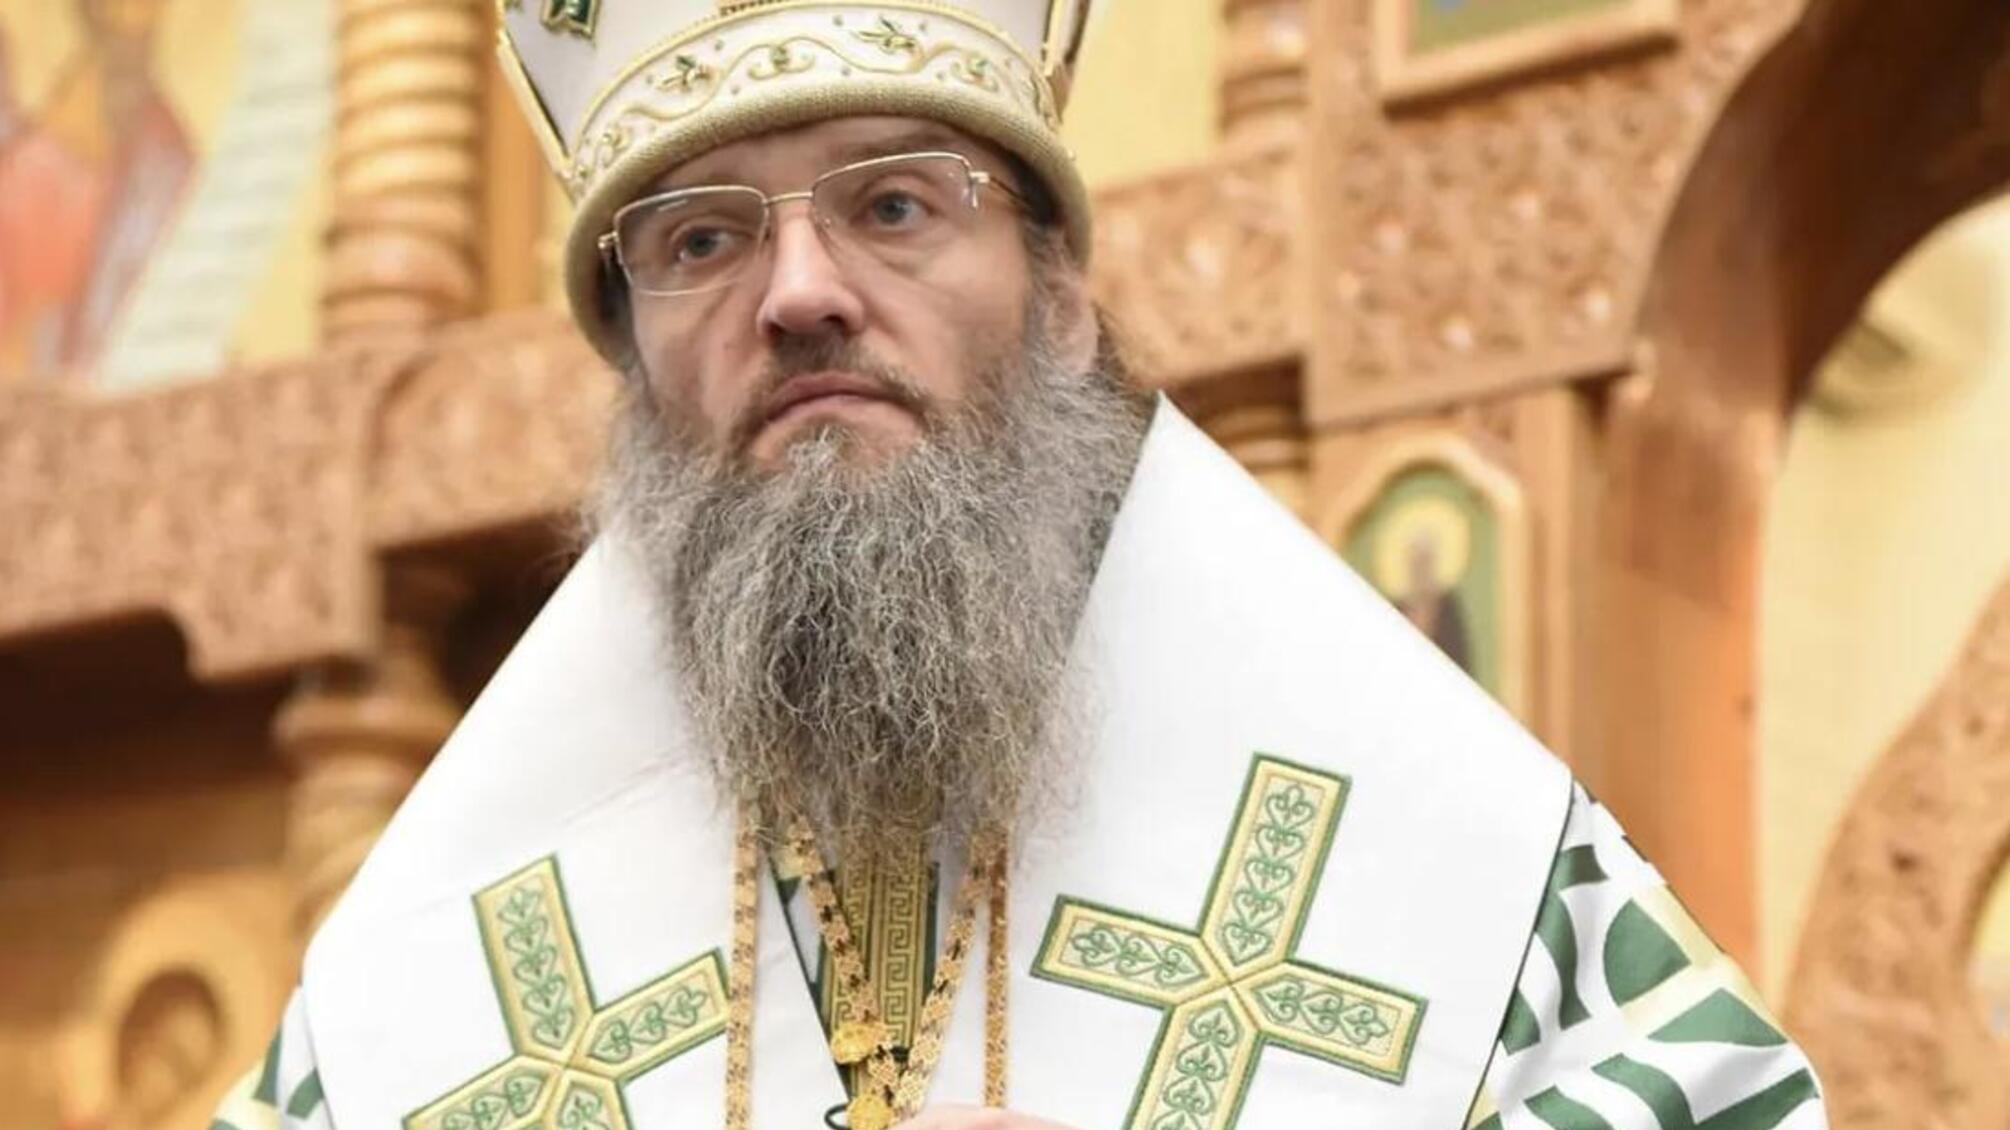 Митрополиту Луке из Запорожья сообщено о подозрении в провоцировании религиозной ненависти